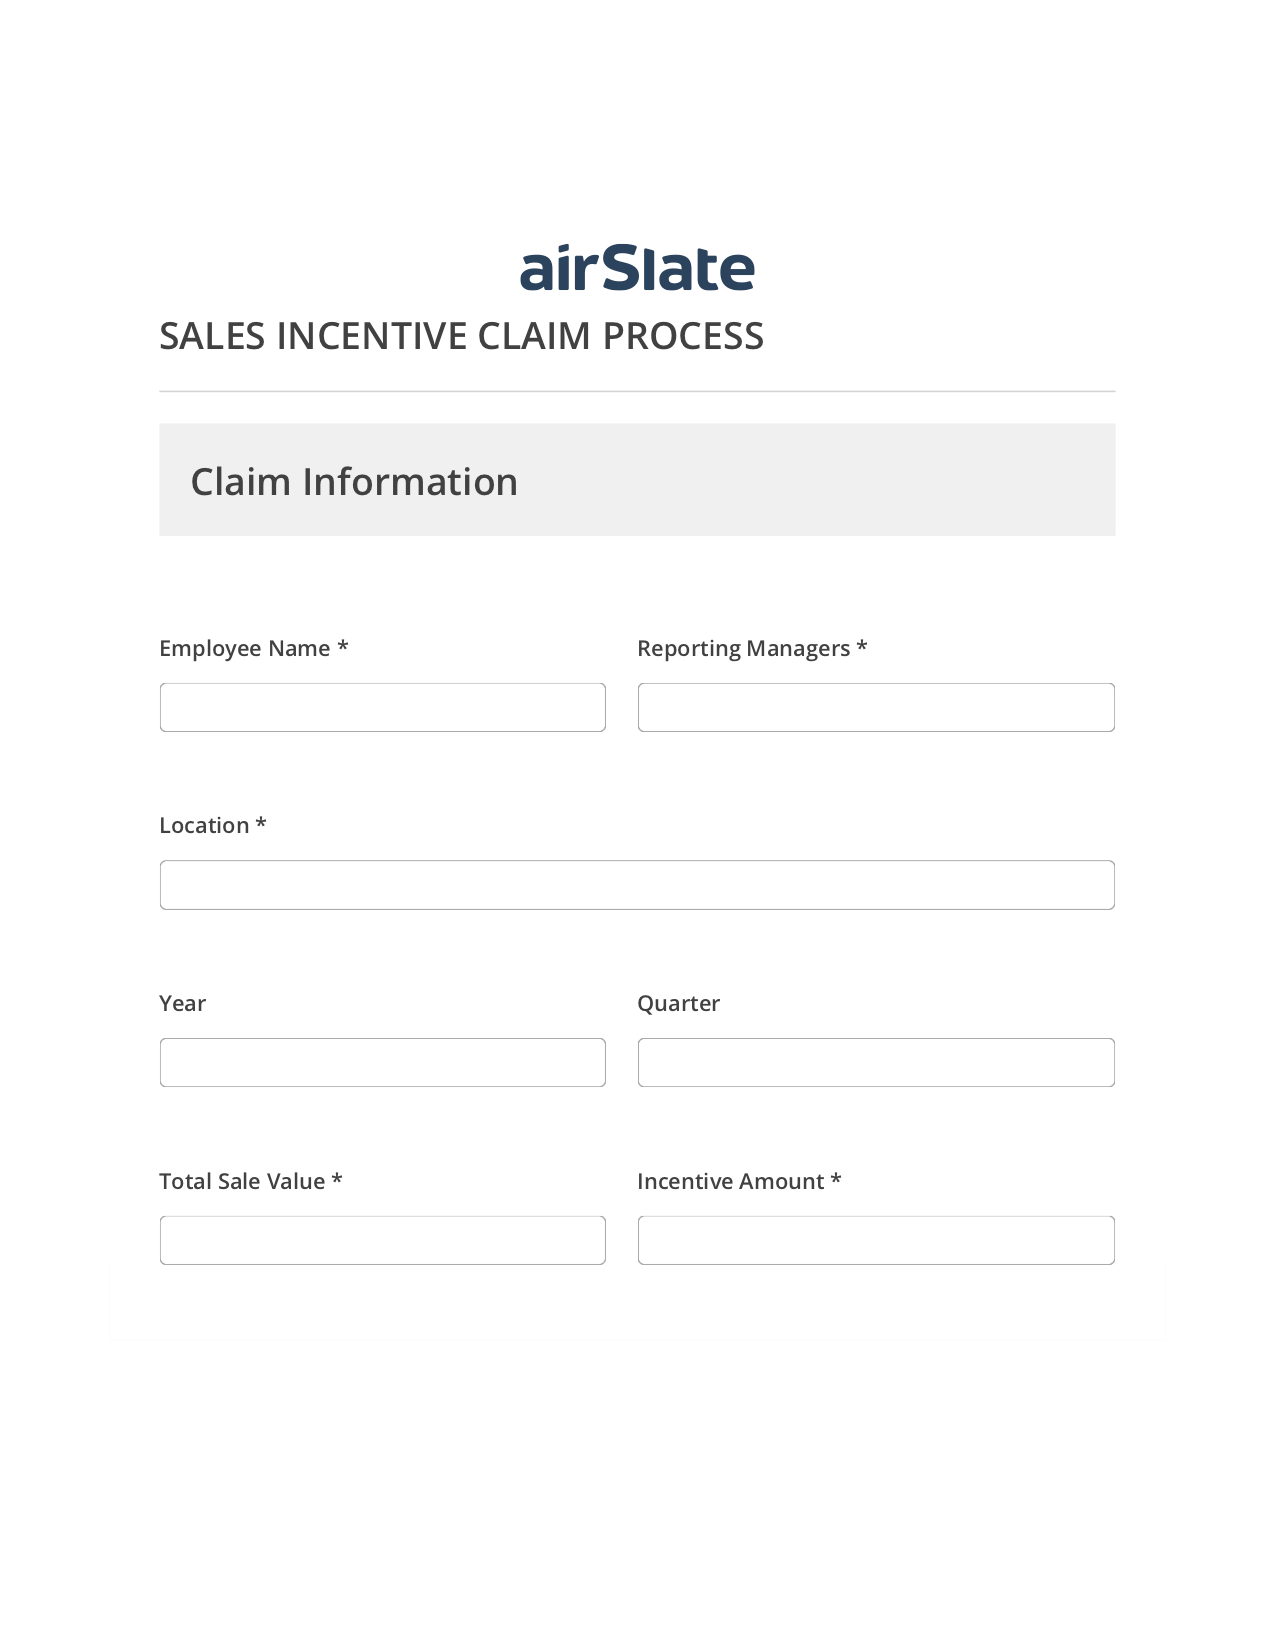 Sales Incentive Claim Process Flow SendGrid send Campaign bot